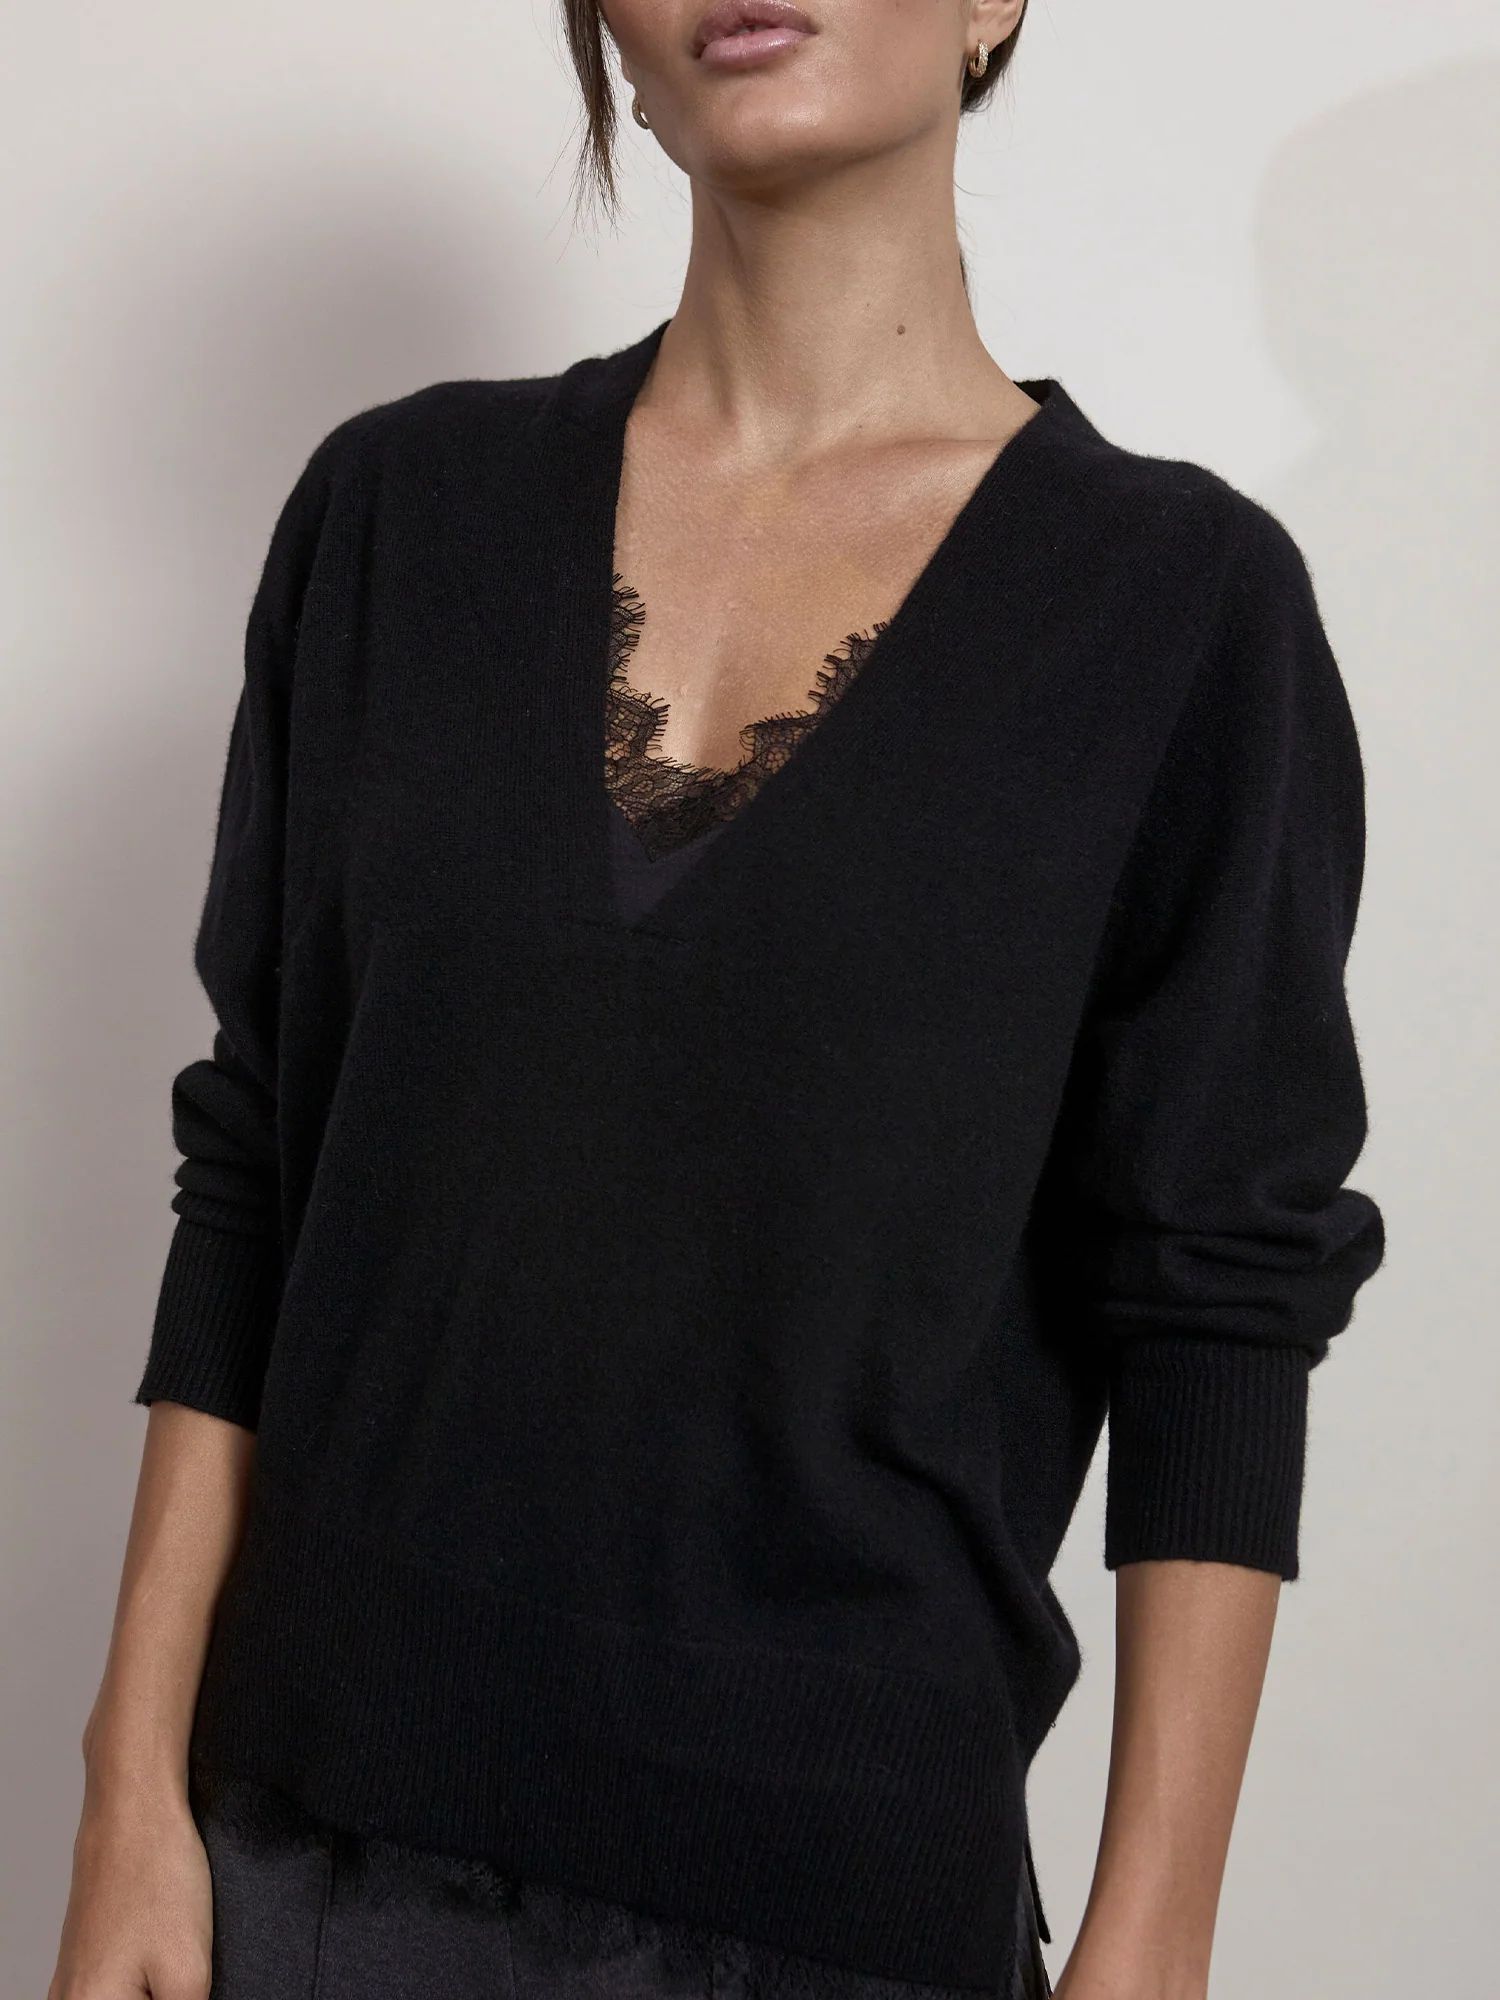 Brochu Walker Women's Lace V-neck Layered Sweater in Black | Brochu Walker